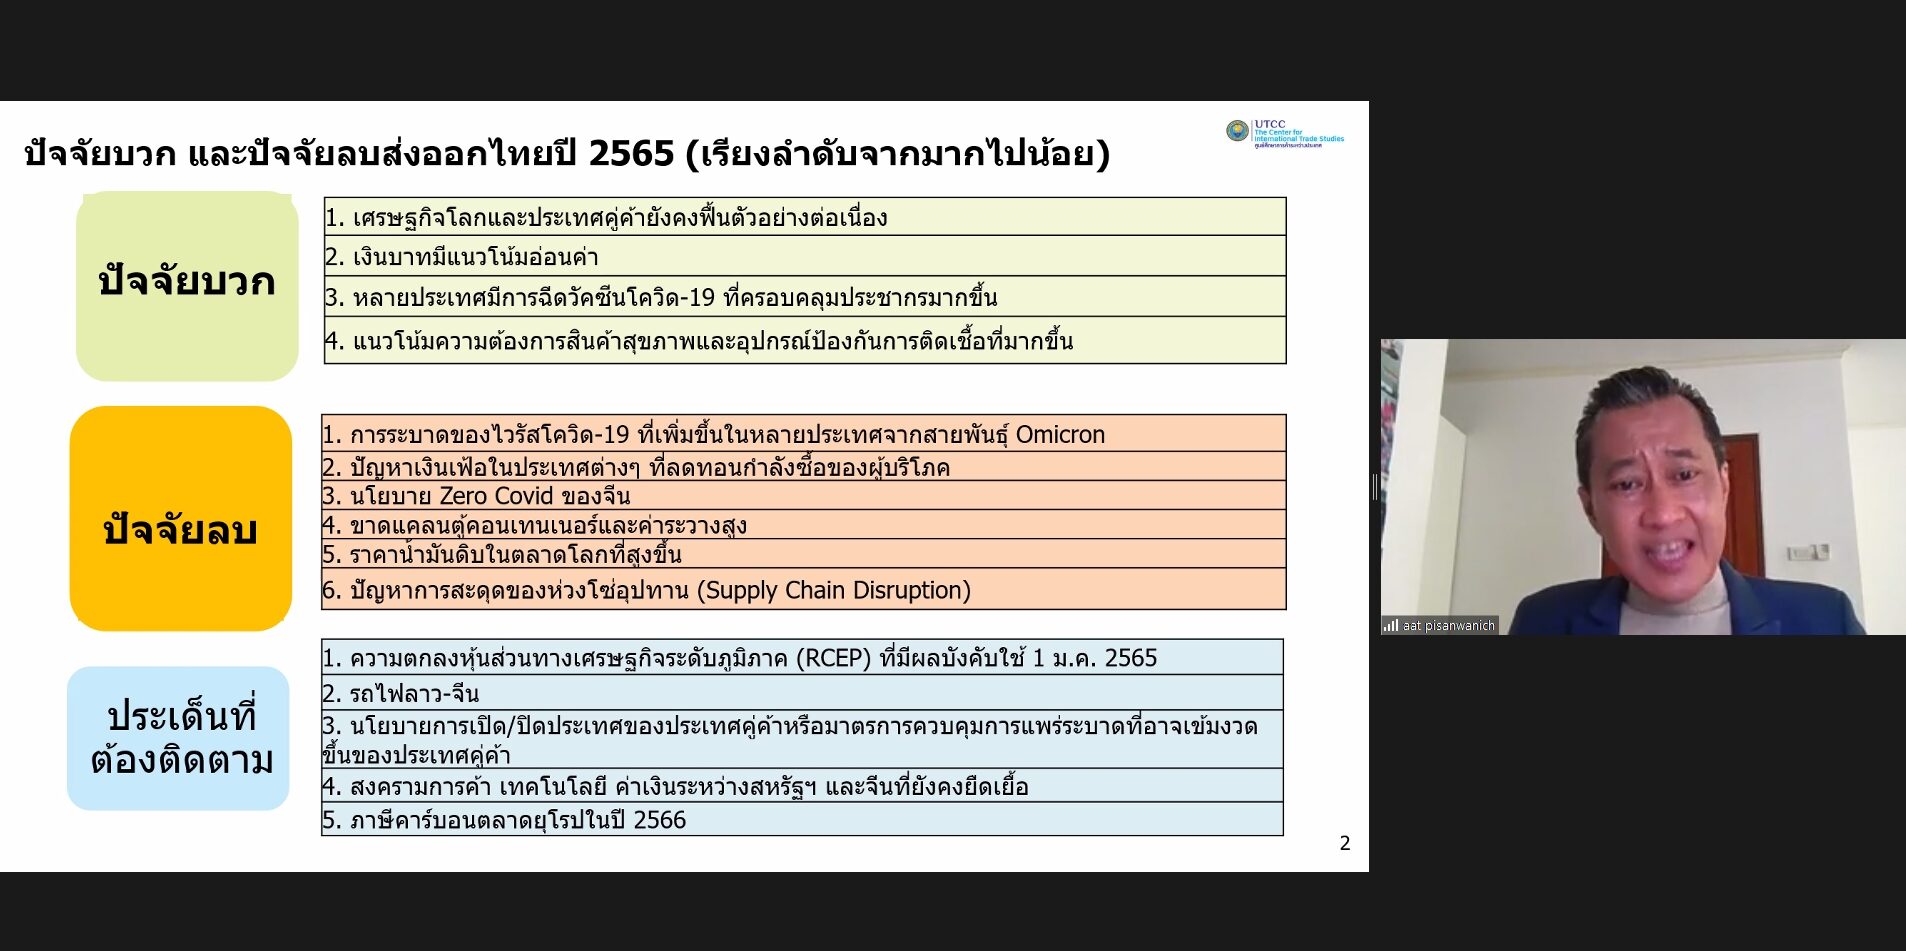 ม.หอค้า ชี้ส่งออกไทย ปี 65 น่าห่วงโตสูงสุด 4.8% เผชิญ 11 ปัจจัยส่งผลเสีย2แสนล้าน